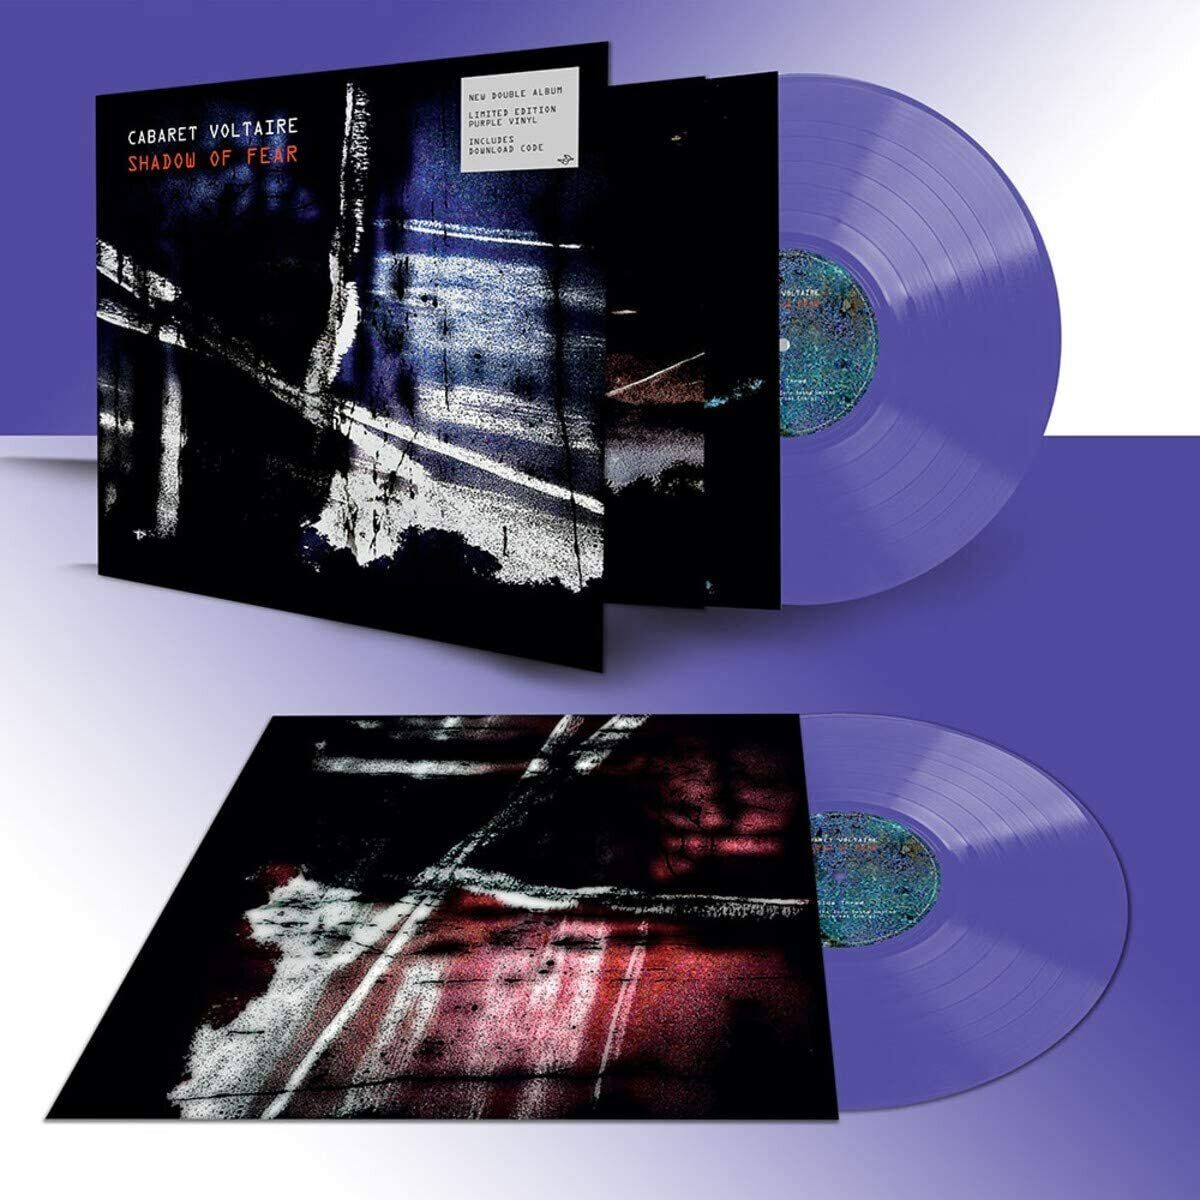 CABARET VOLTAIRE – Shadow Of Fear 2xLP (purple vinyl)